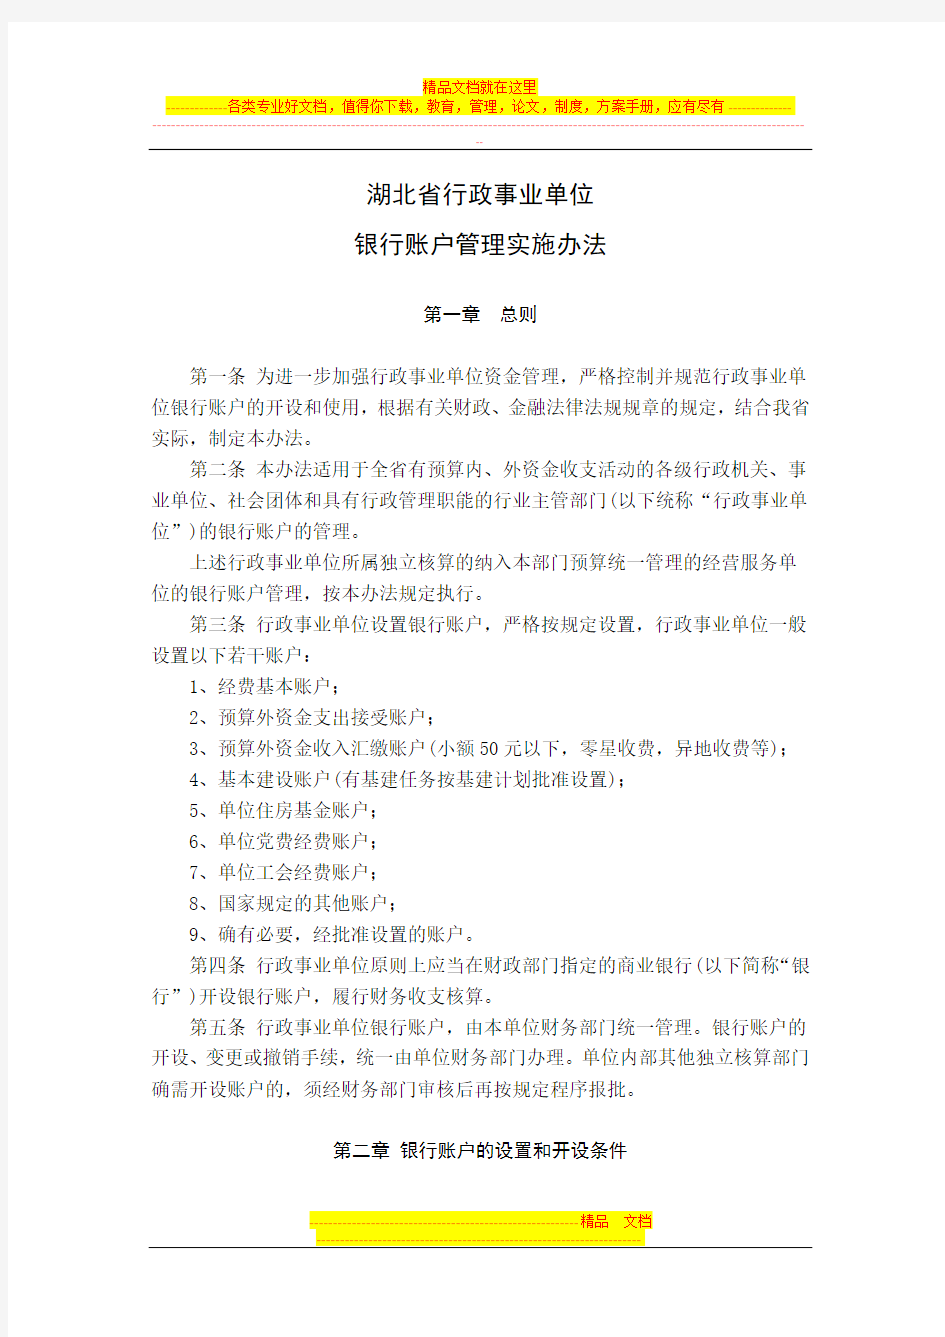 湖北省行政事业单位银行账户管理实施办法(打印版)